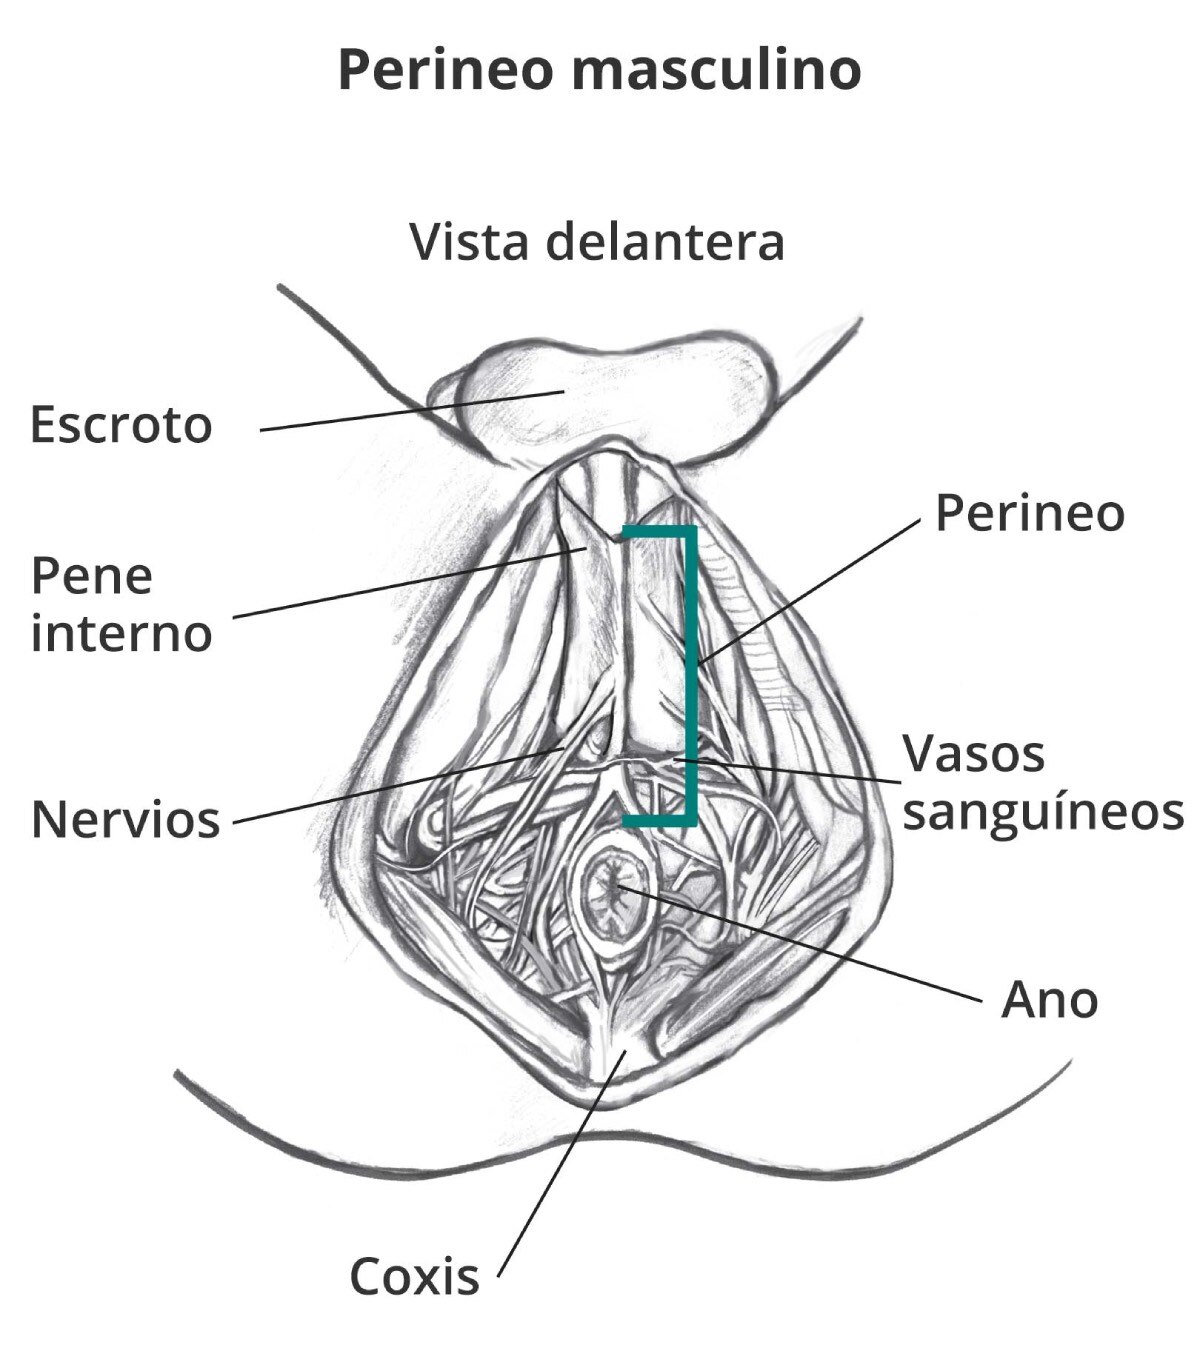 El perineo masculino con letreros del escroto, pene interno, perineo, nervios, vasos sanguíneos, coxis y ano.